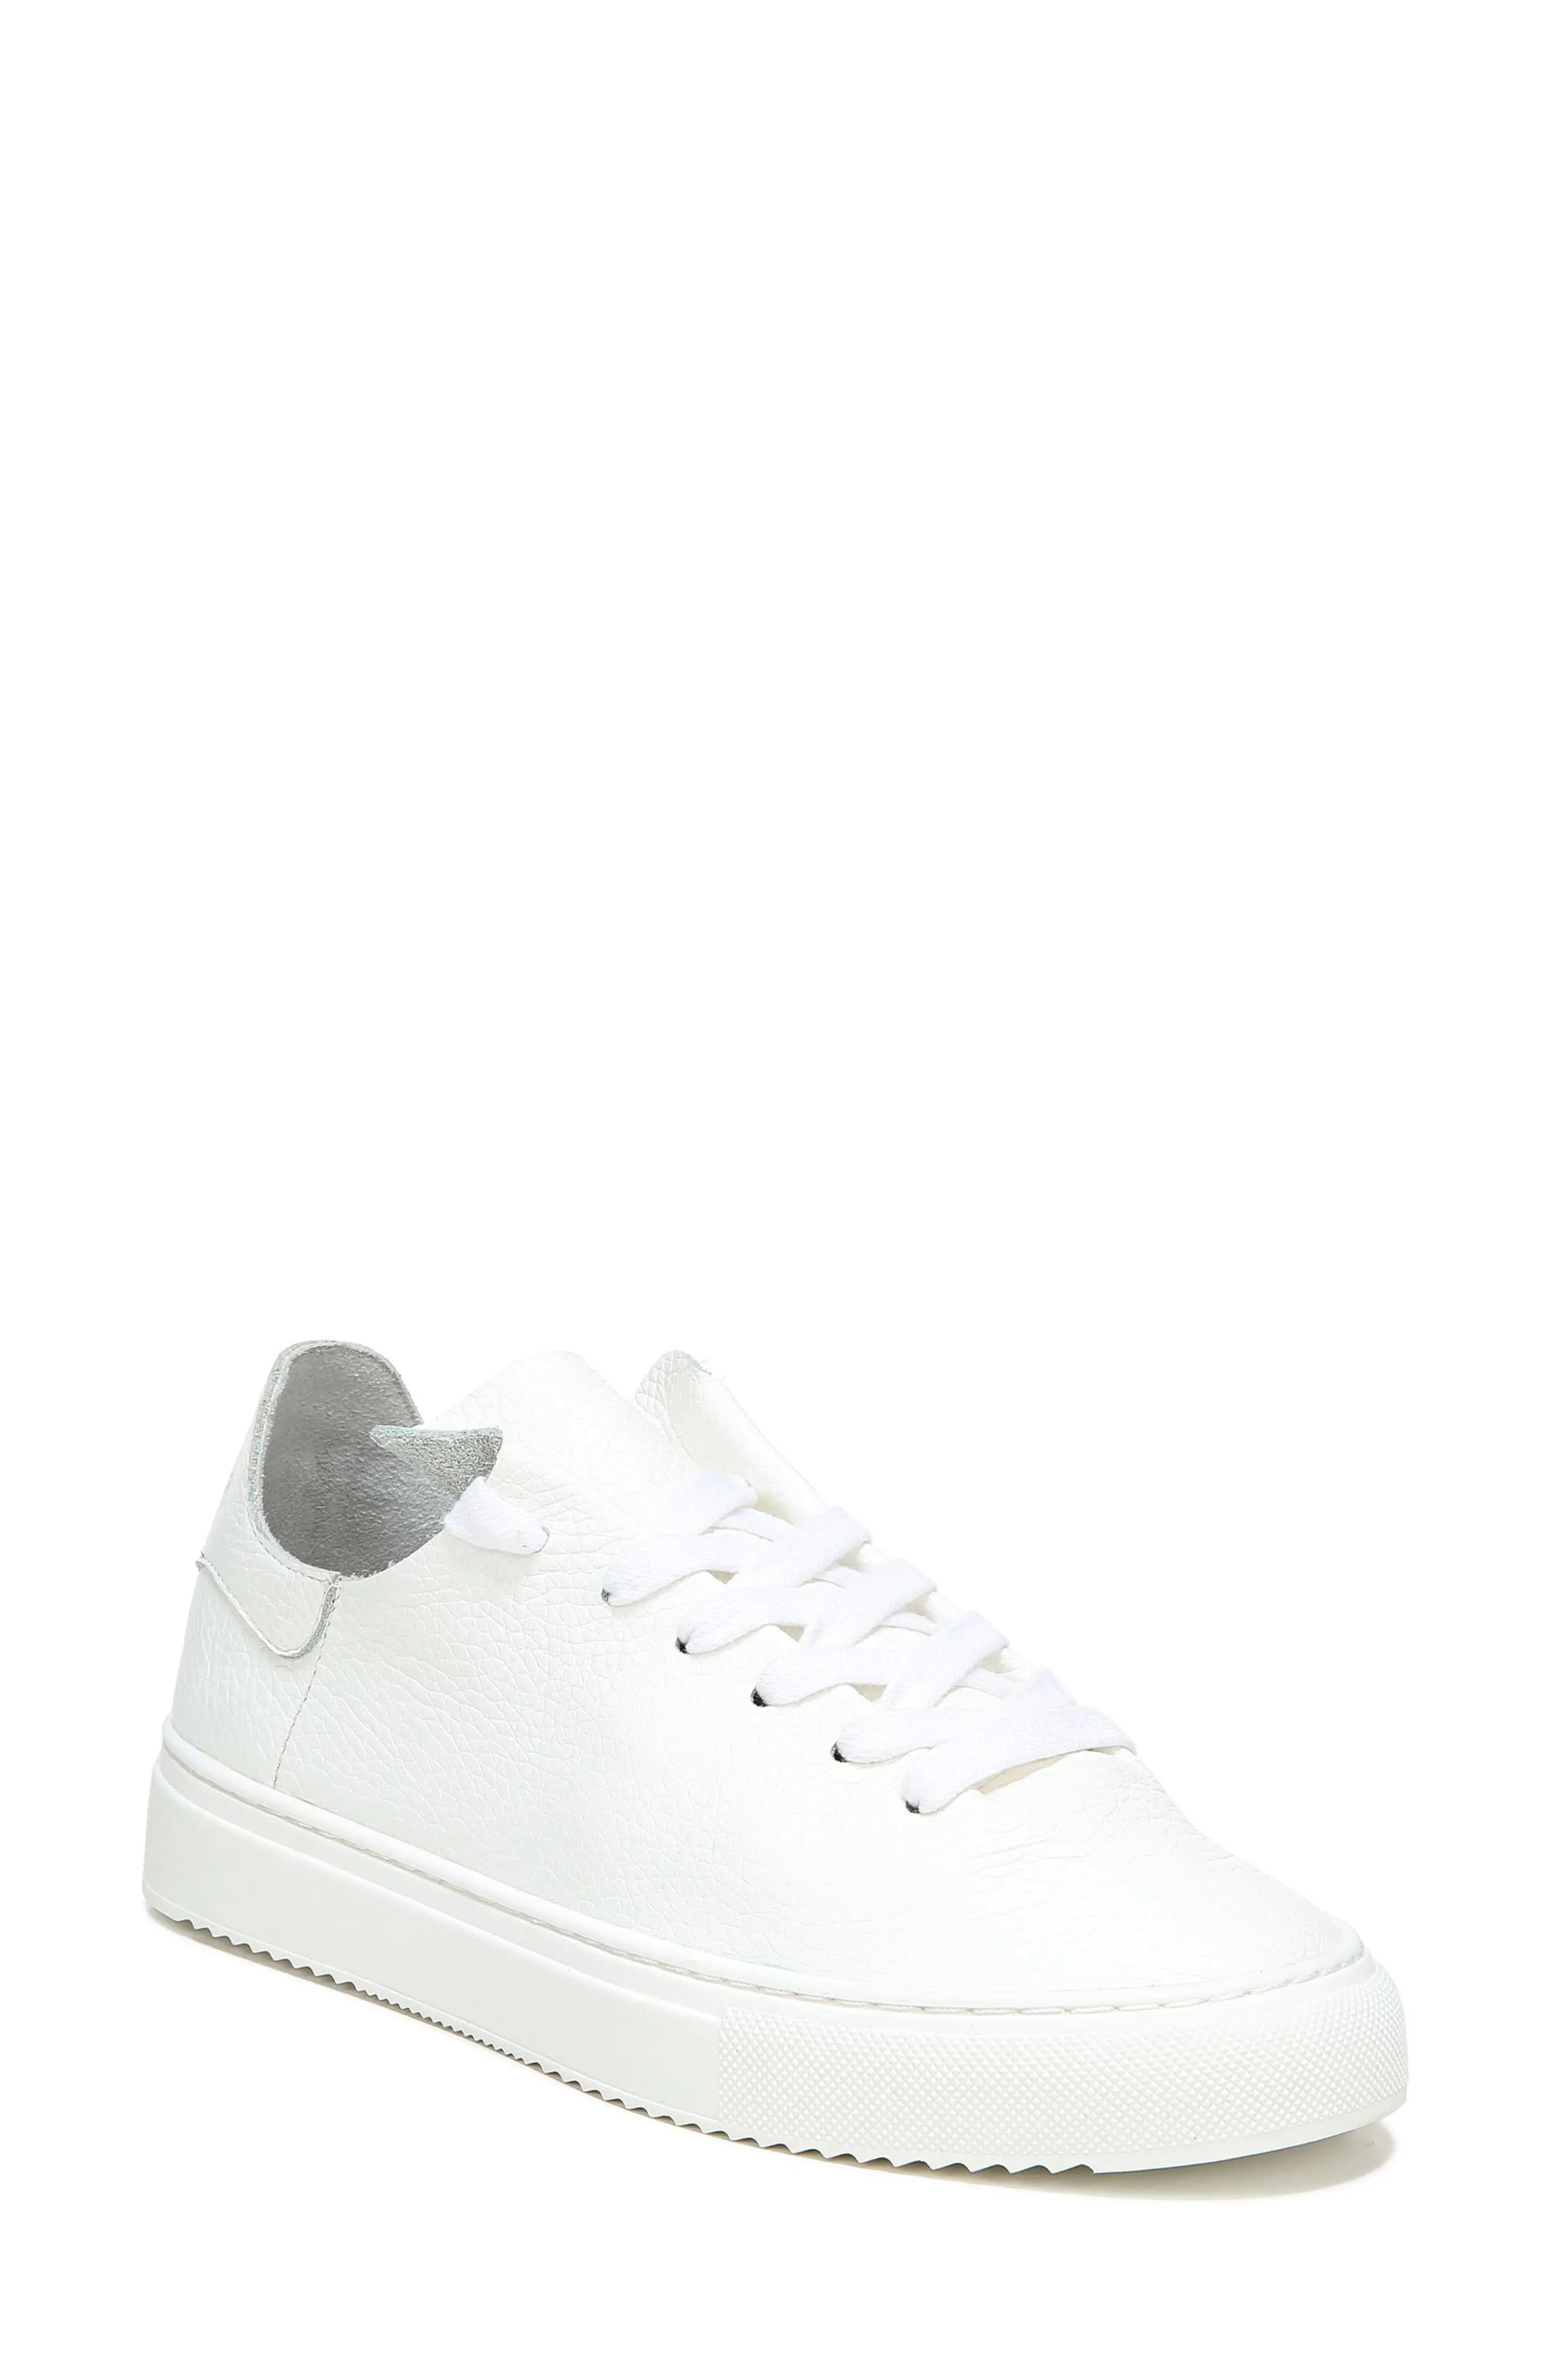 Women's Sam Edelman Poppy Sneaker, Size 6.5 M - White | Nordstrom